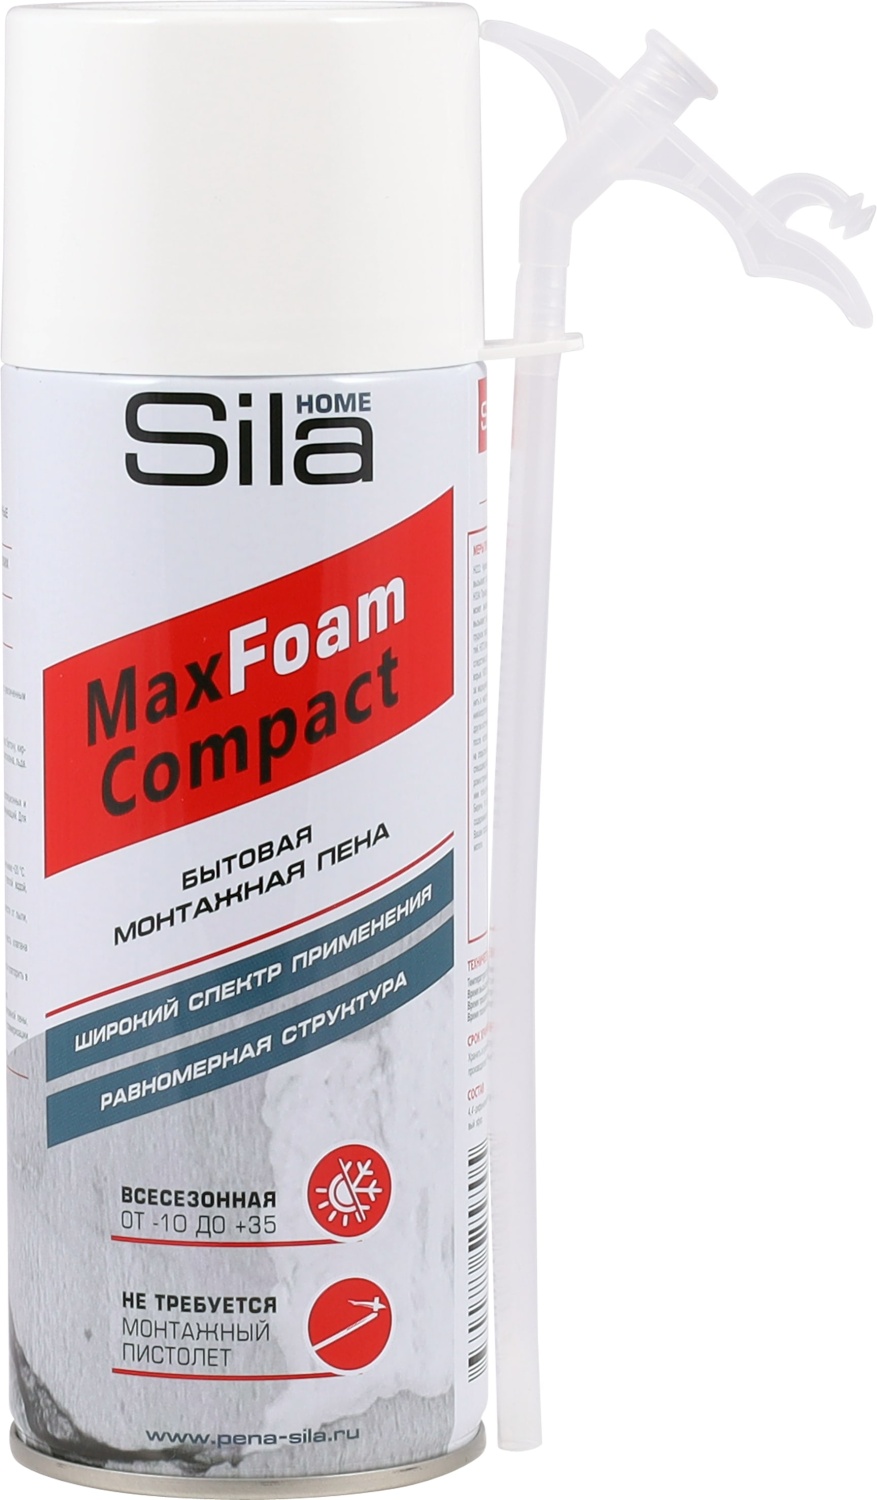 Sila Home Max Foam Compact,    